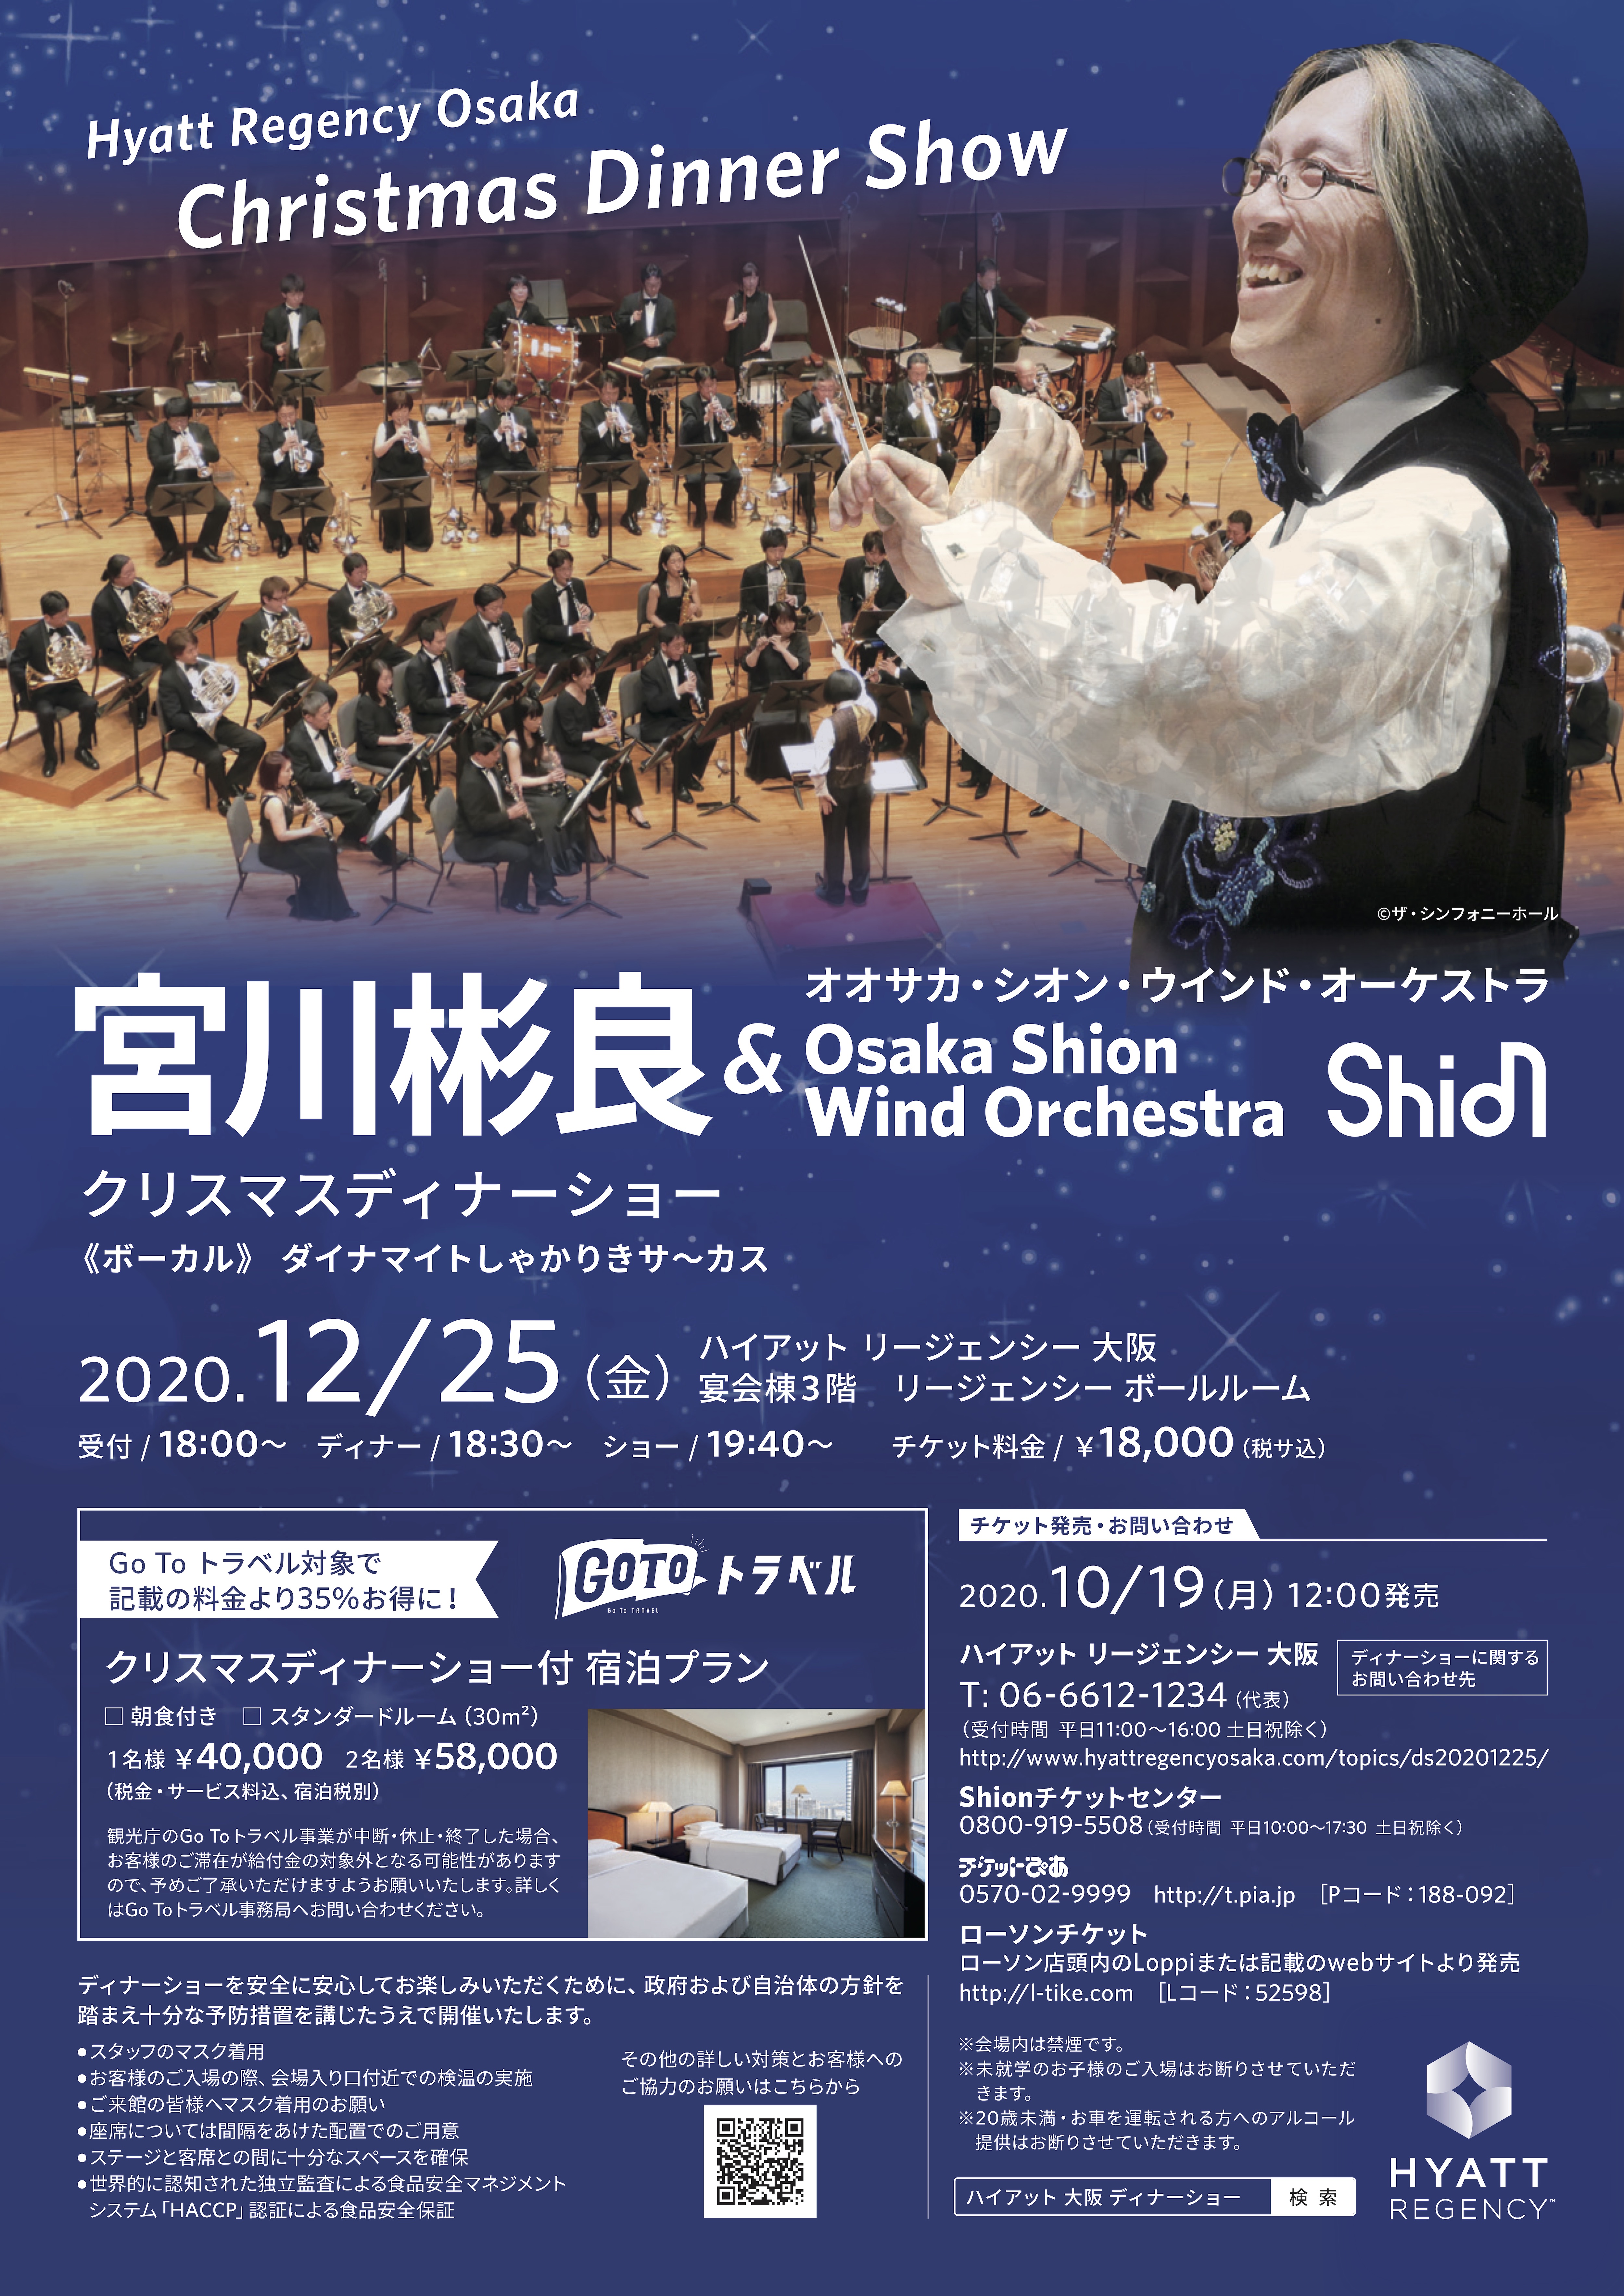 Hyatt Regency Osaka Christmas Dinner Show宮川彬良 Osaka Shion Wind Orchestra コンサート情報 Osaka Shion Wind Orchestra 大阪市音楽団